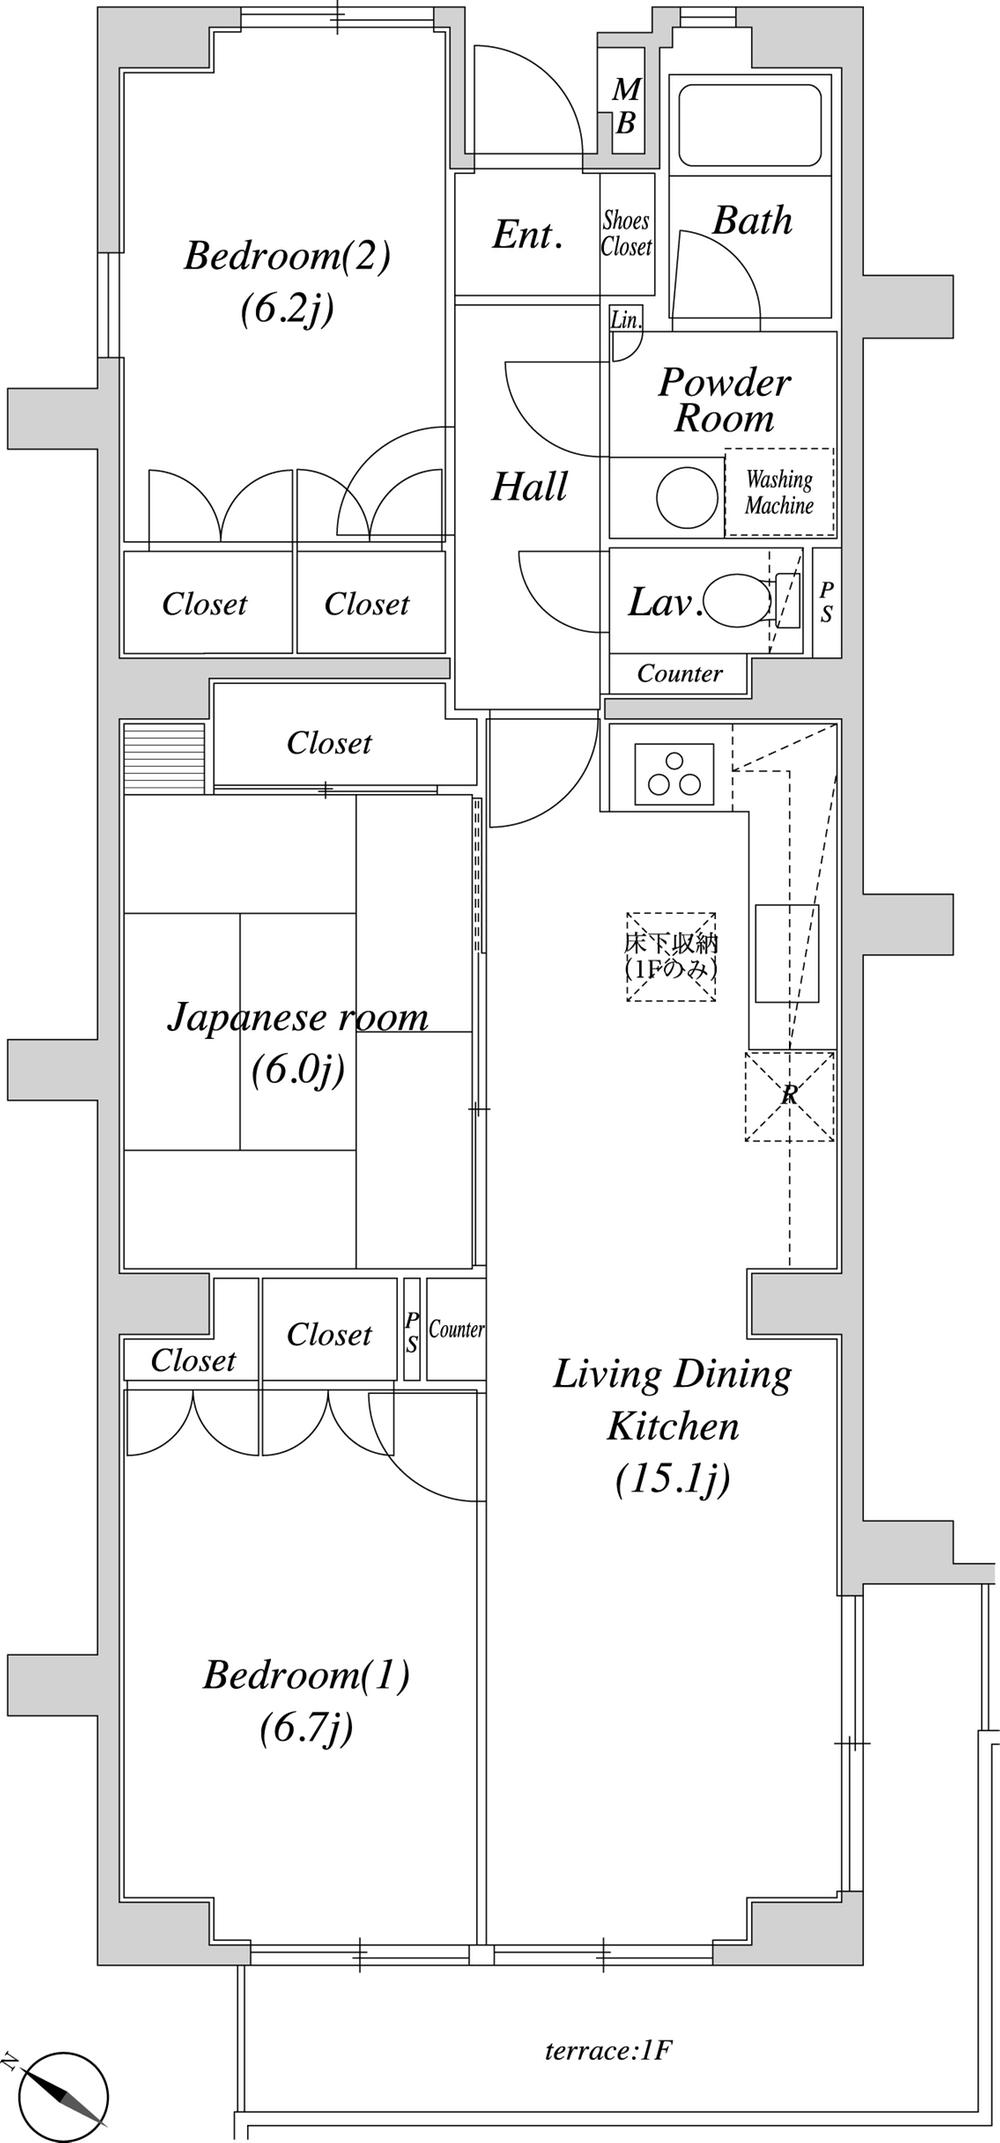 Floor plan. 3LDK, Price 21,990,000 yen, Occupied area 78.65 sq m